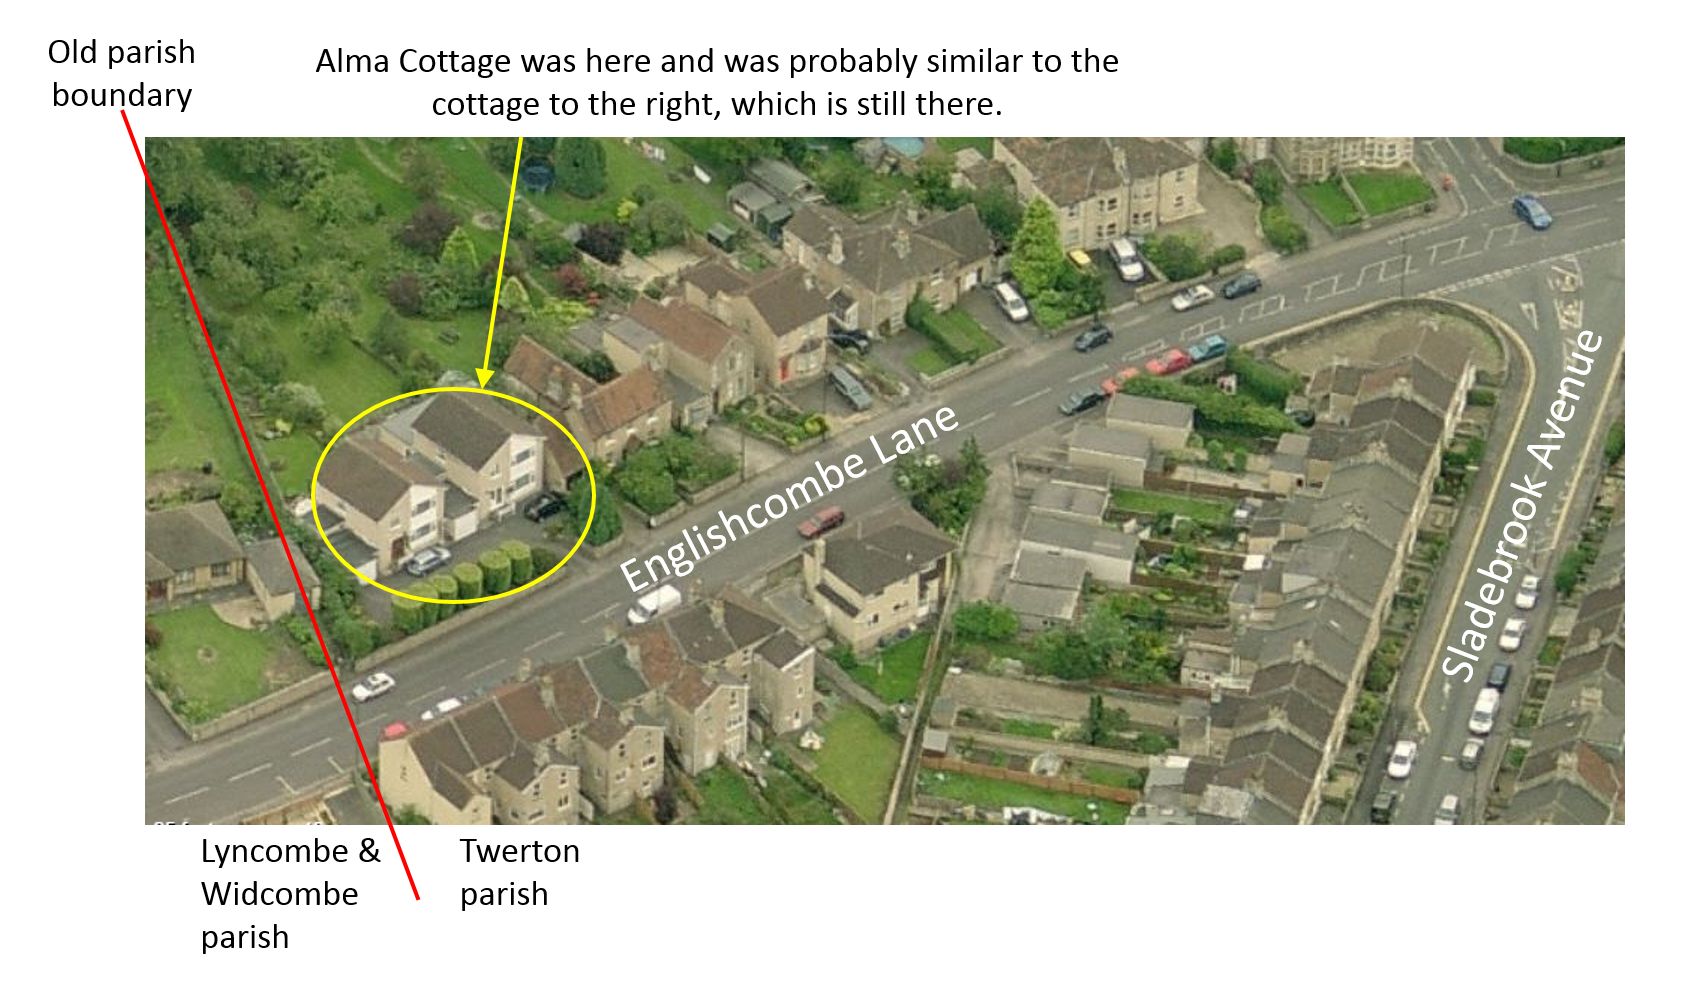 Showing location of Alma Cottage, Englishcombe Lane